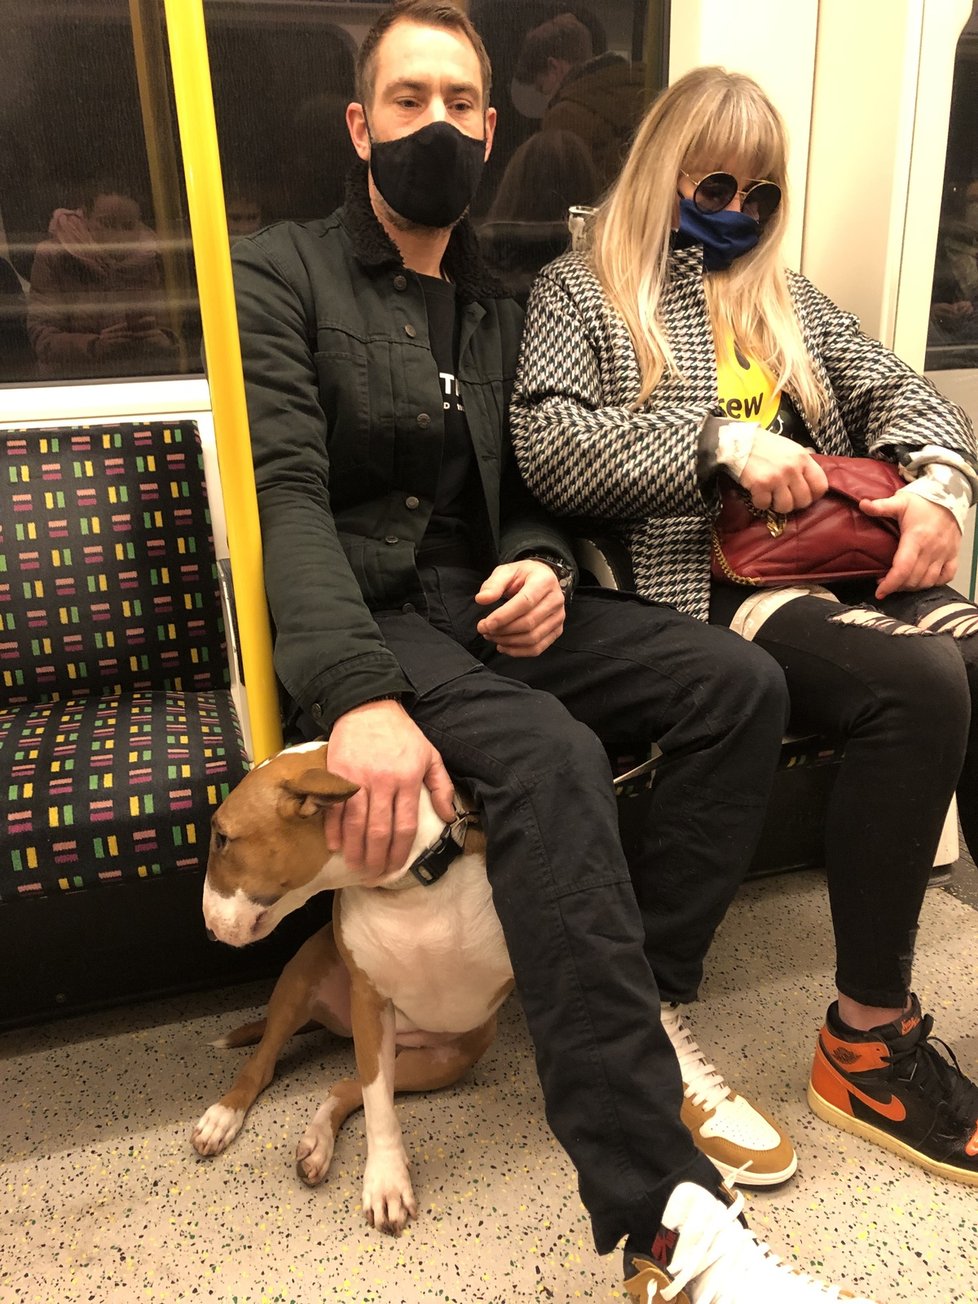 Někteří lidé v metru roušky poctivě nosí